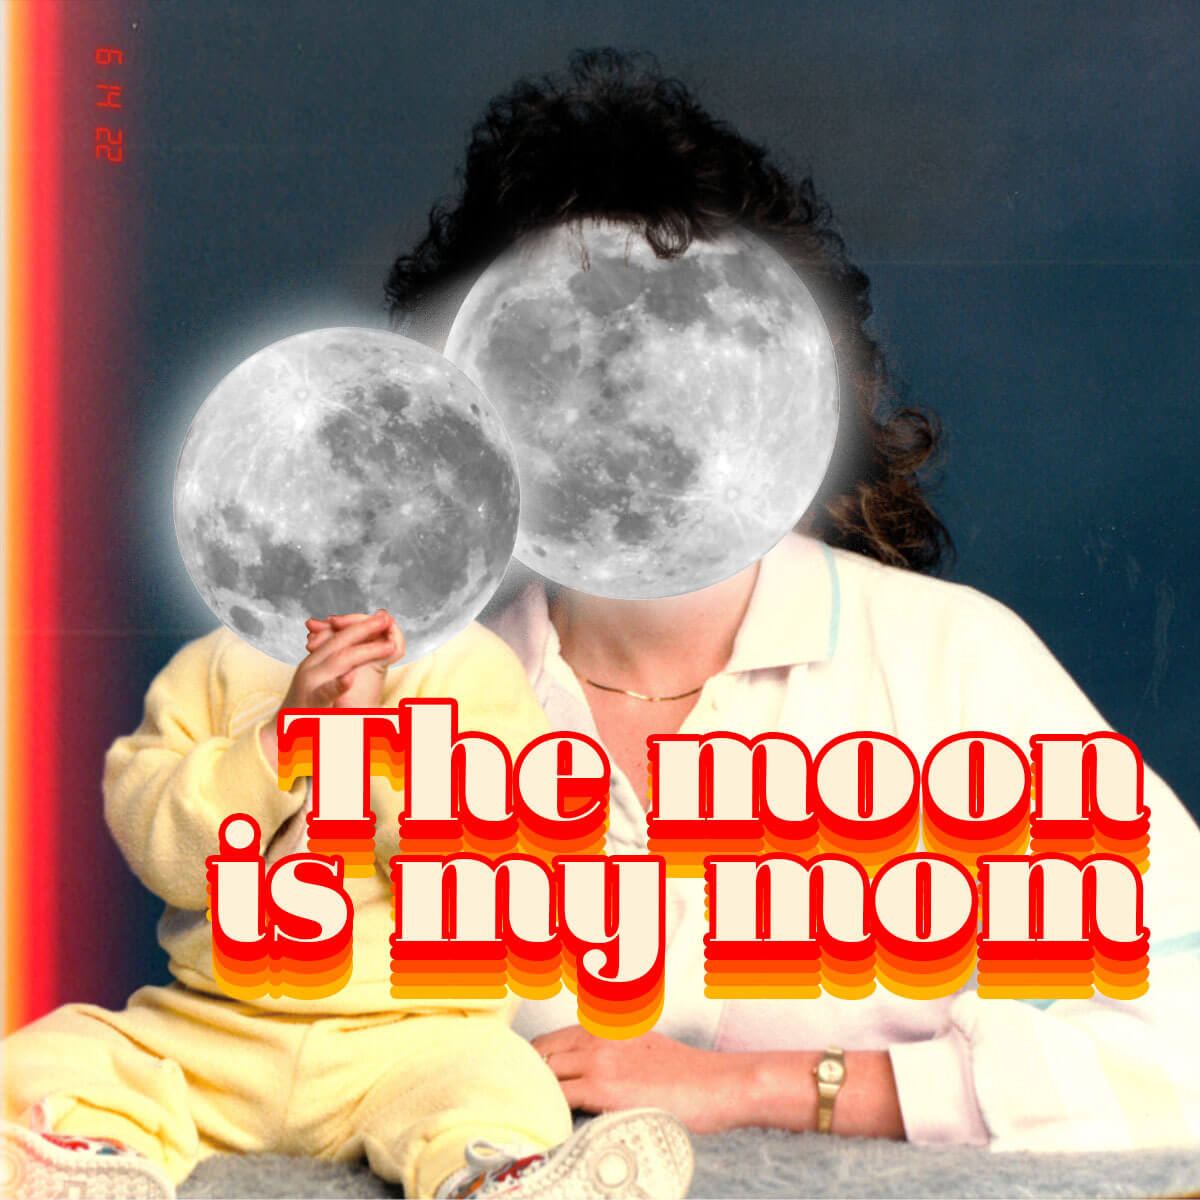 Moon Mom wallpaper version